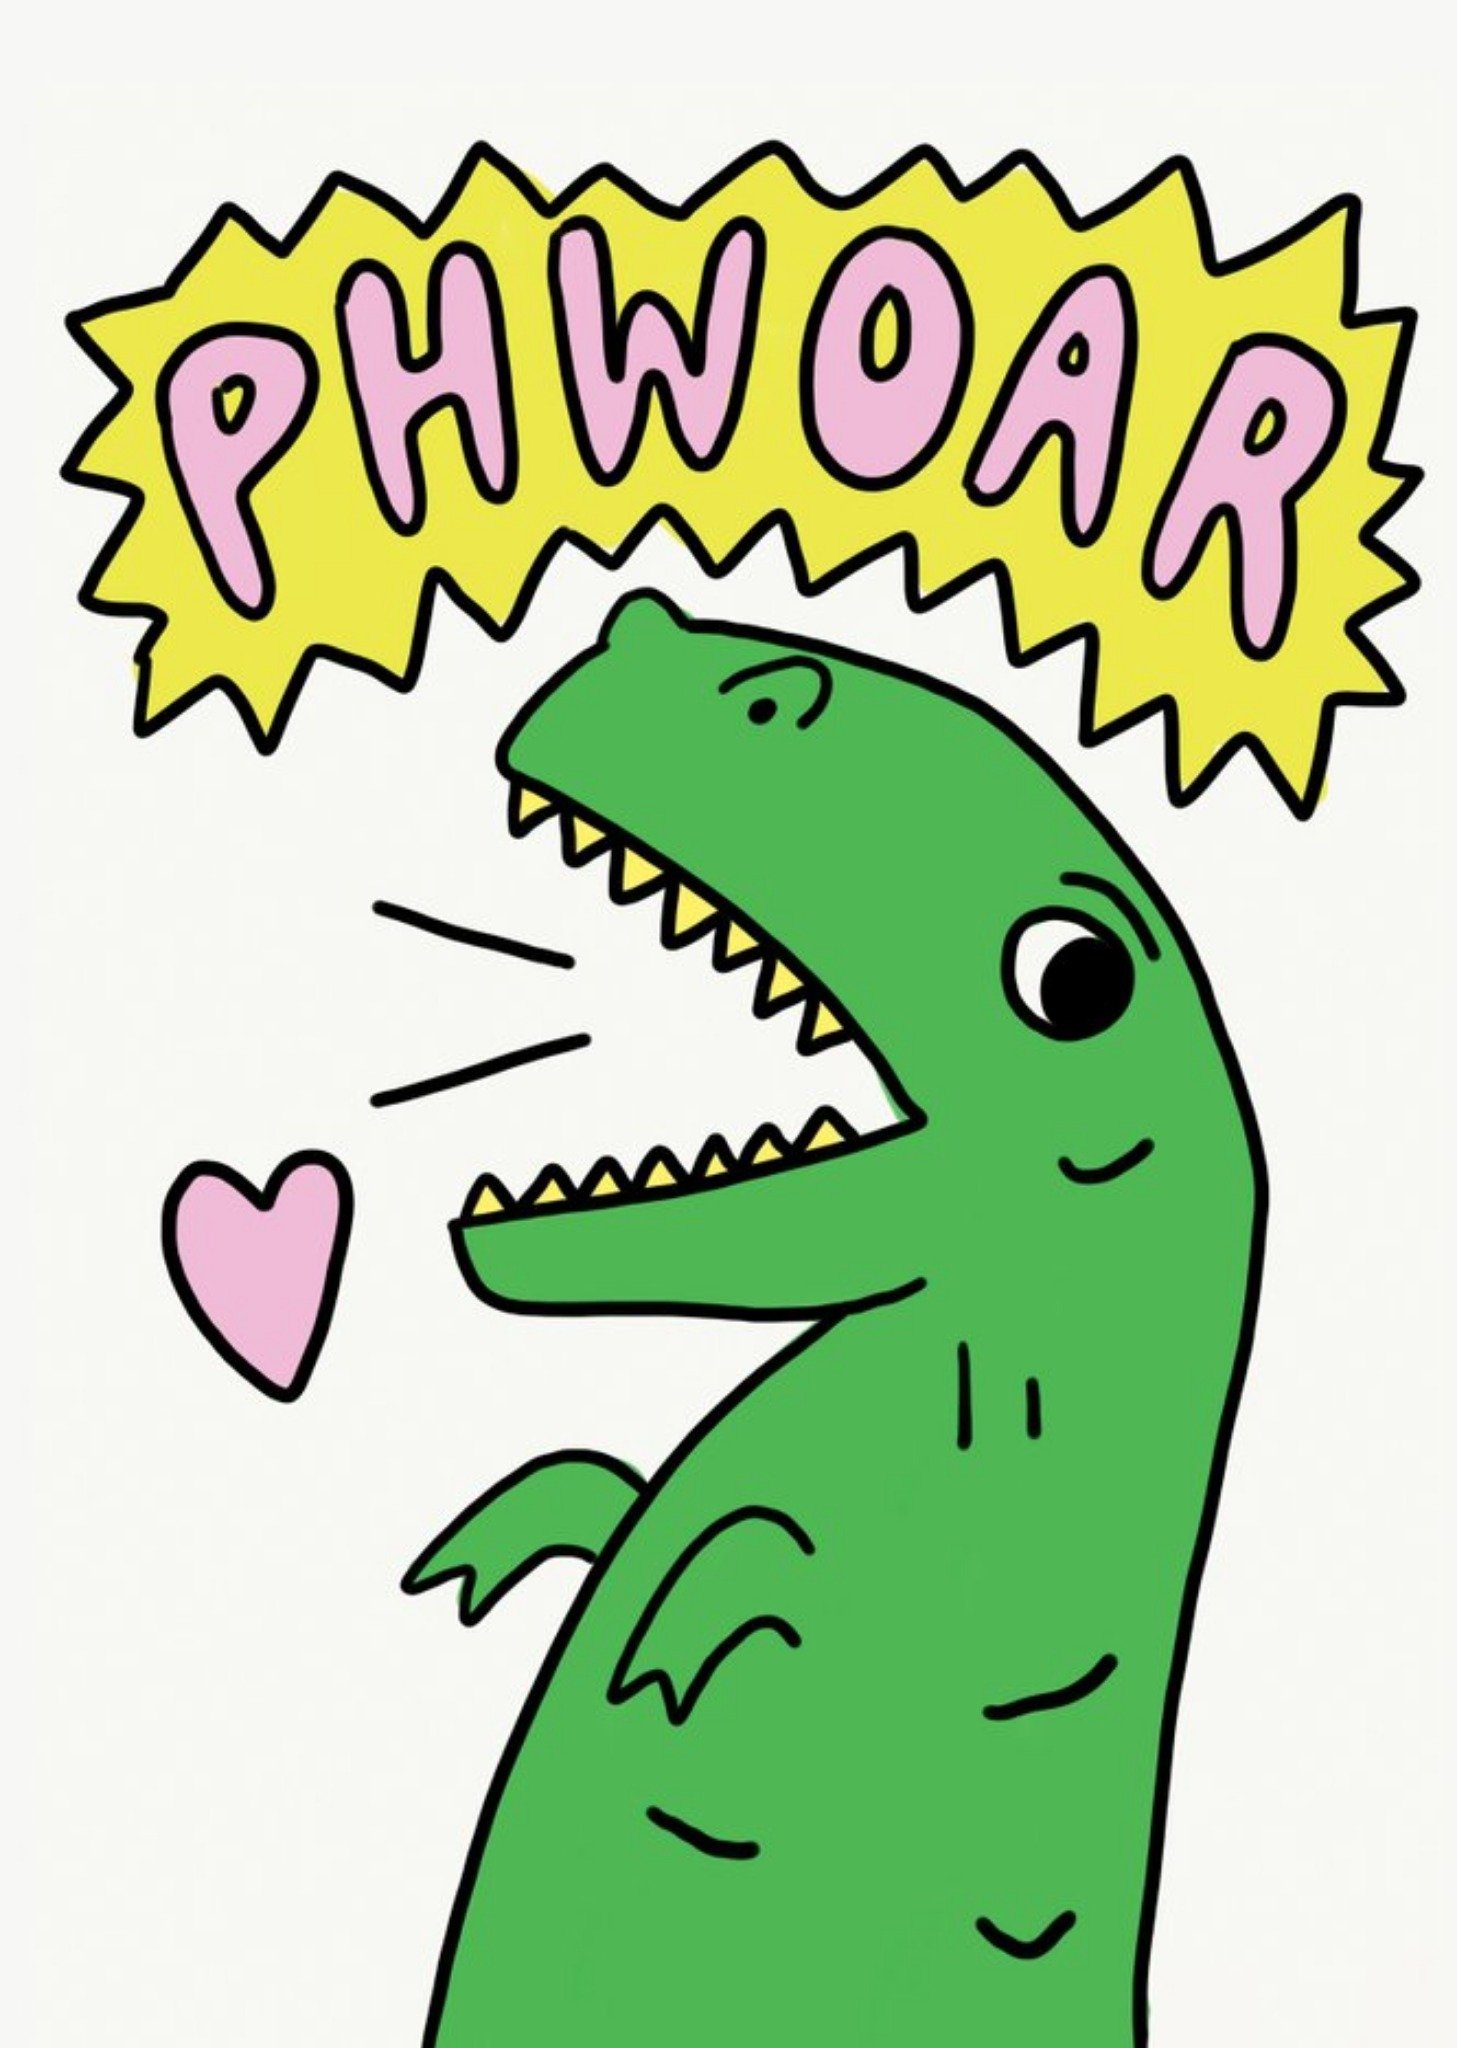 Jolly Awesome Phwoar Dinosaur Humour Birthday Card Ecard